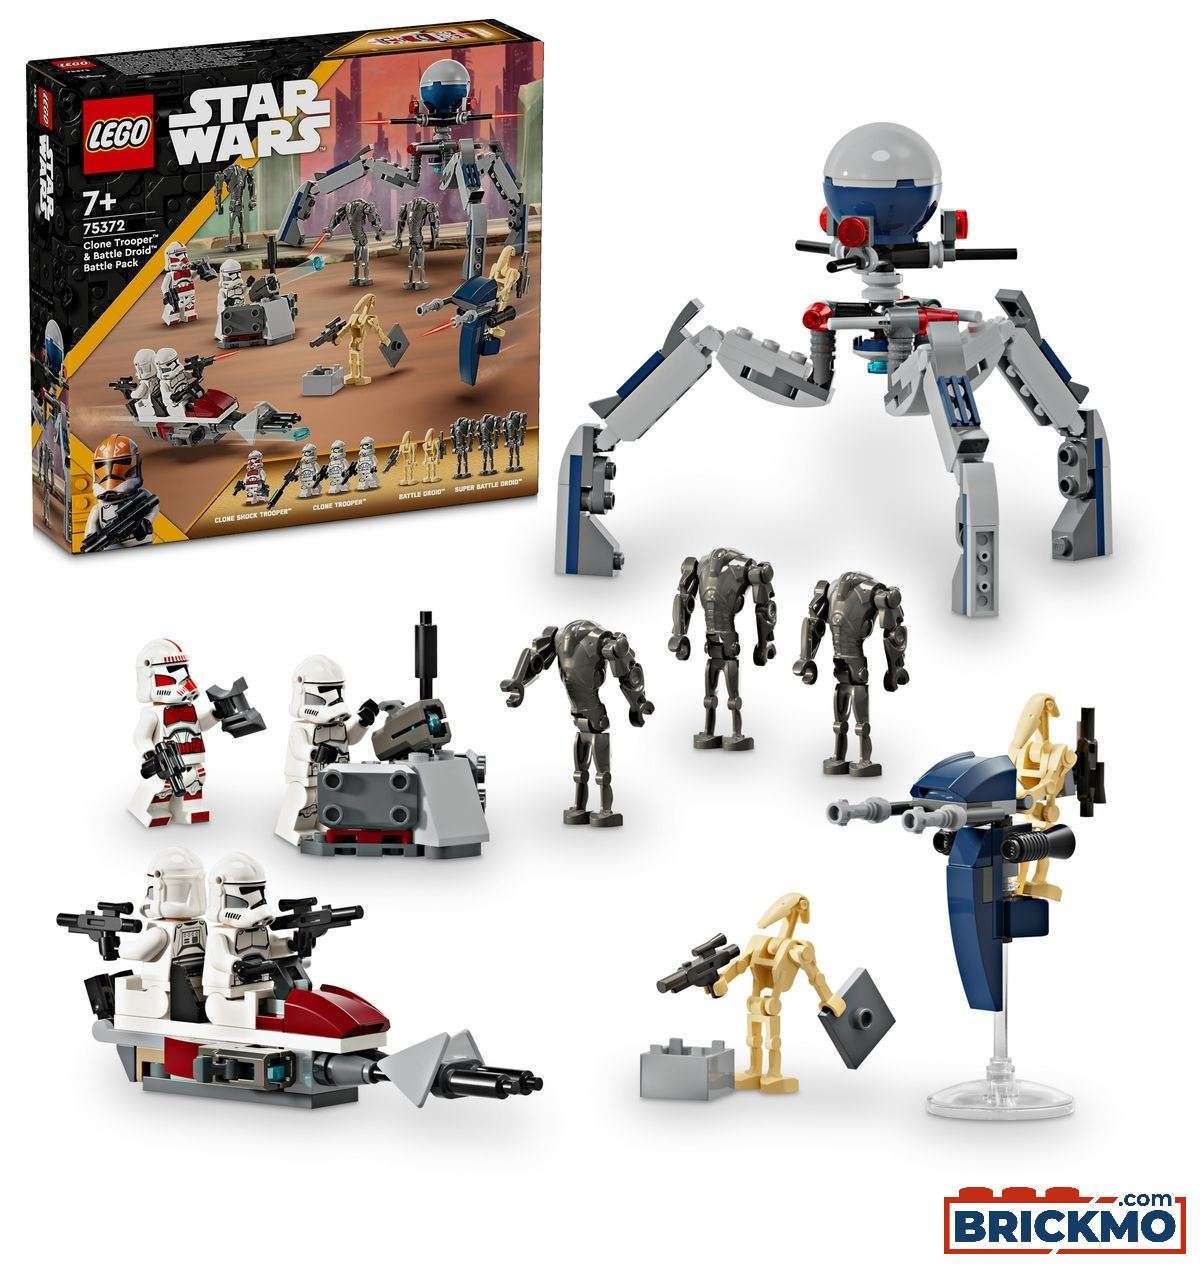 LEGO Star Wars 75372 Battle Pack med klonsoldater og kampdroider 75372